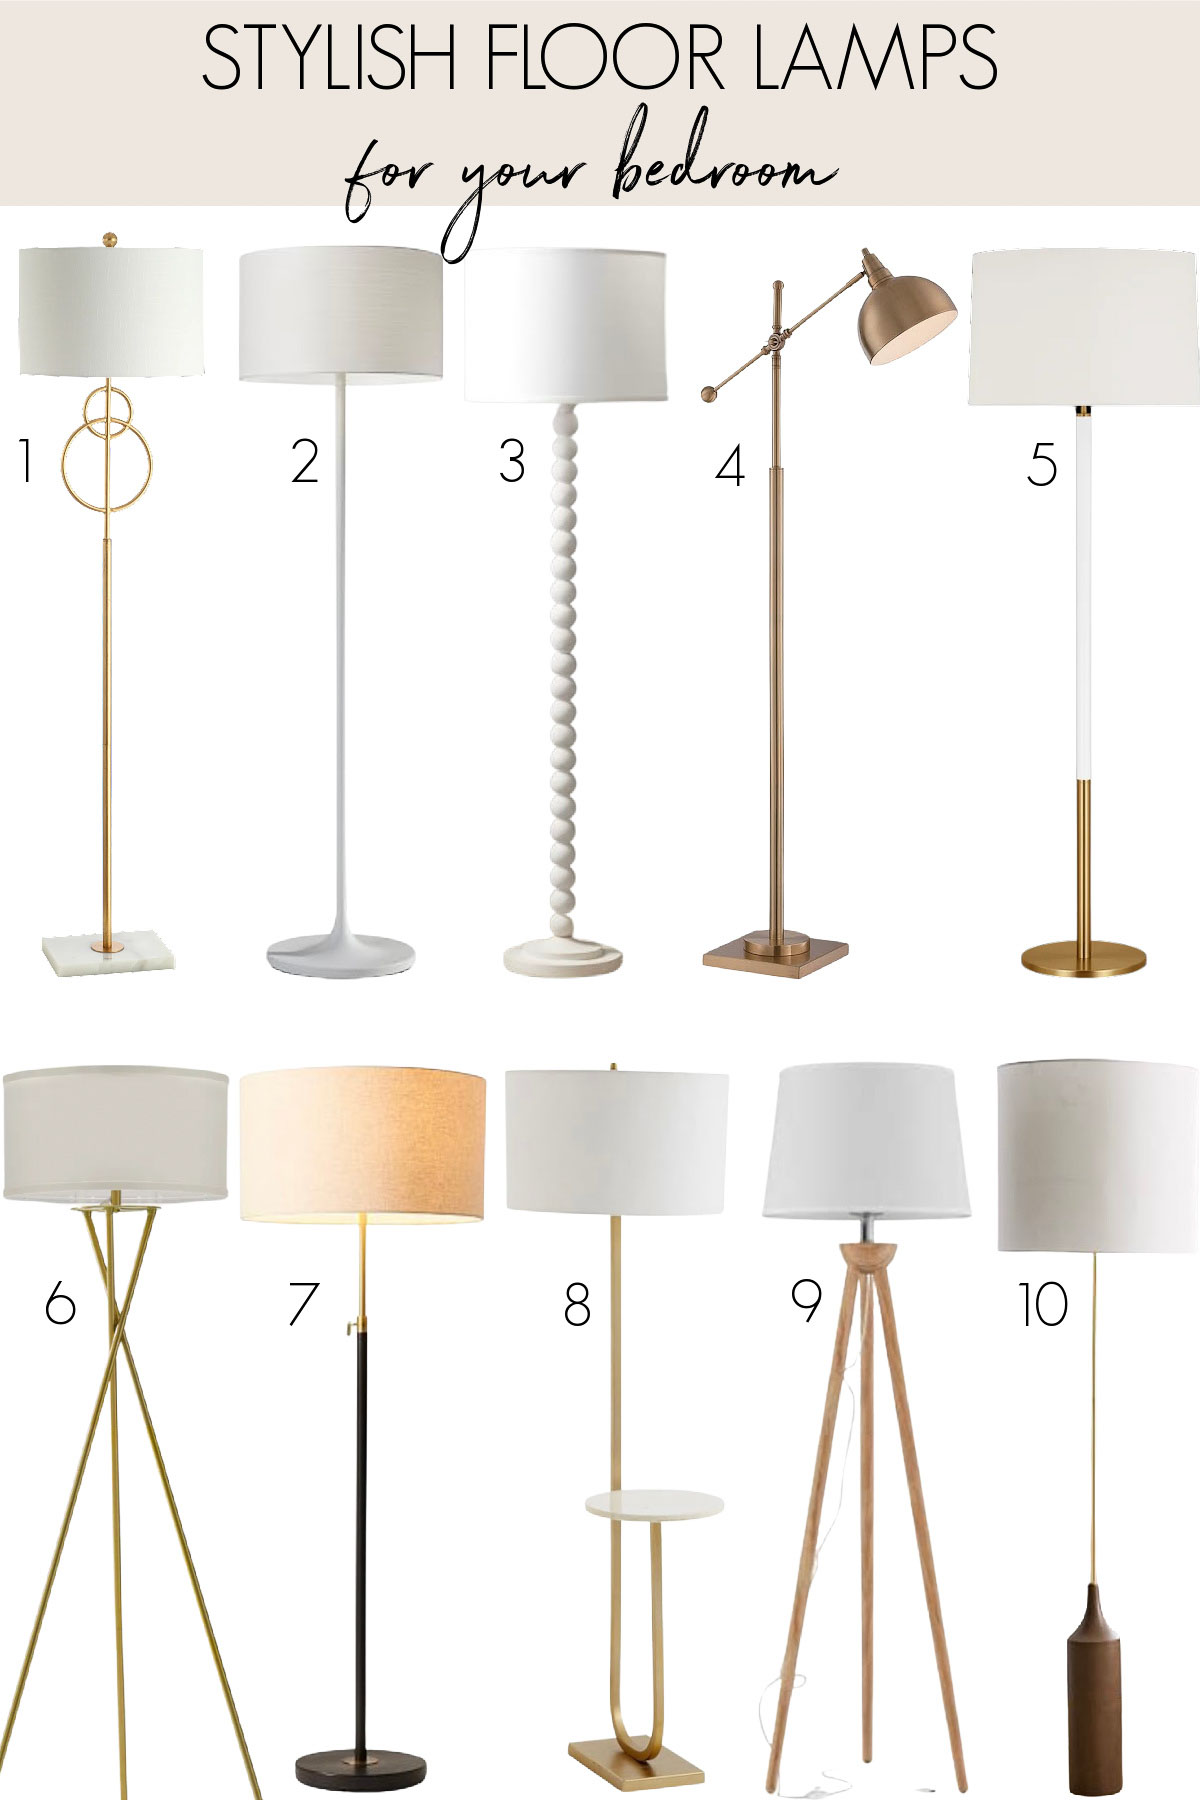 Ten stylish bedroom floor lamps